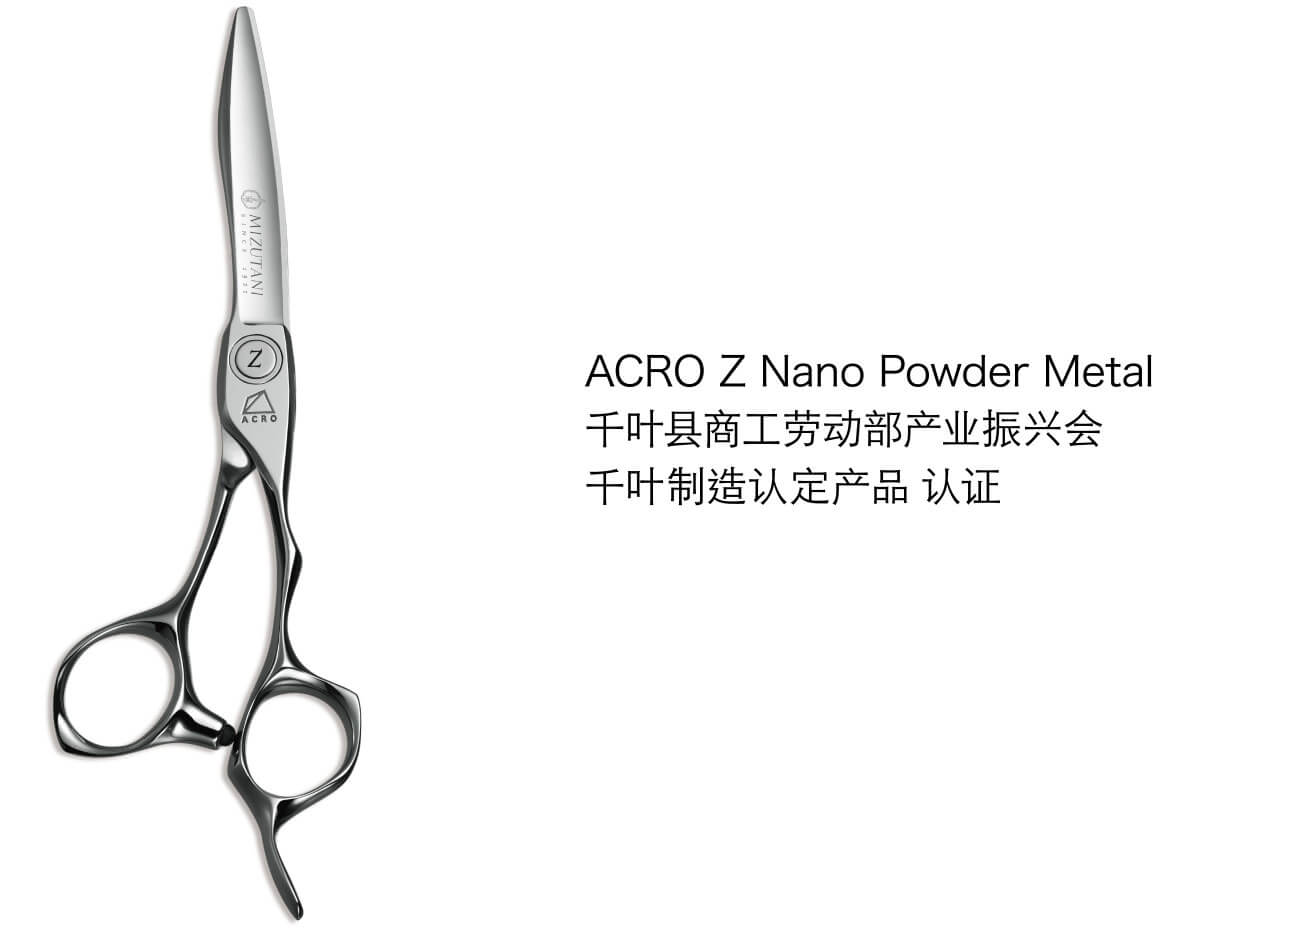 ACRO Z Nano Powder Metal / 千叶县商工劳动部产业振兴会 / 千叶制造认定产品 认证